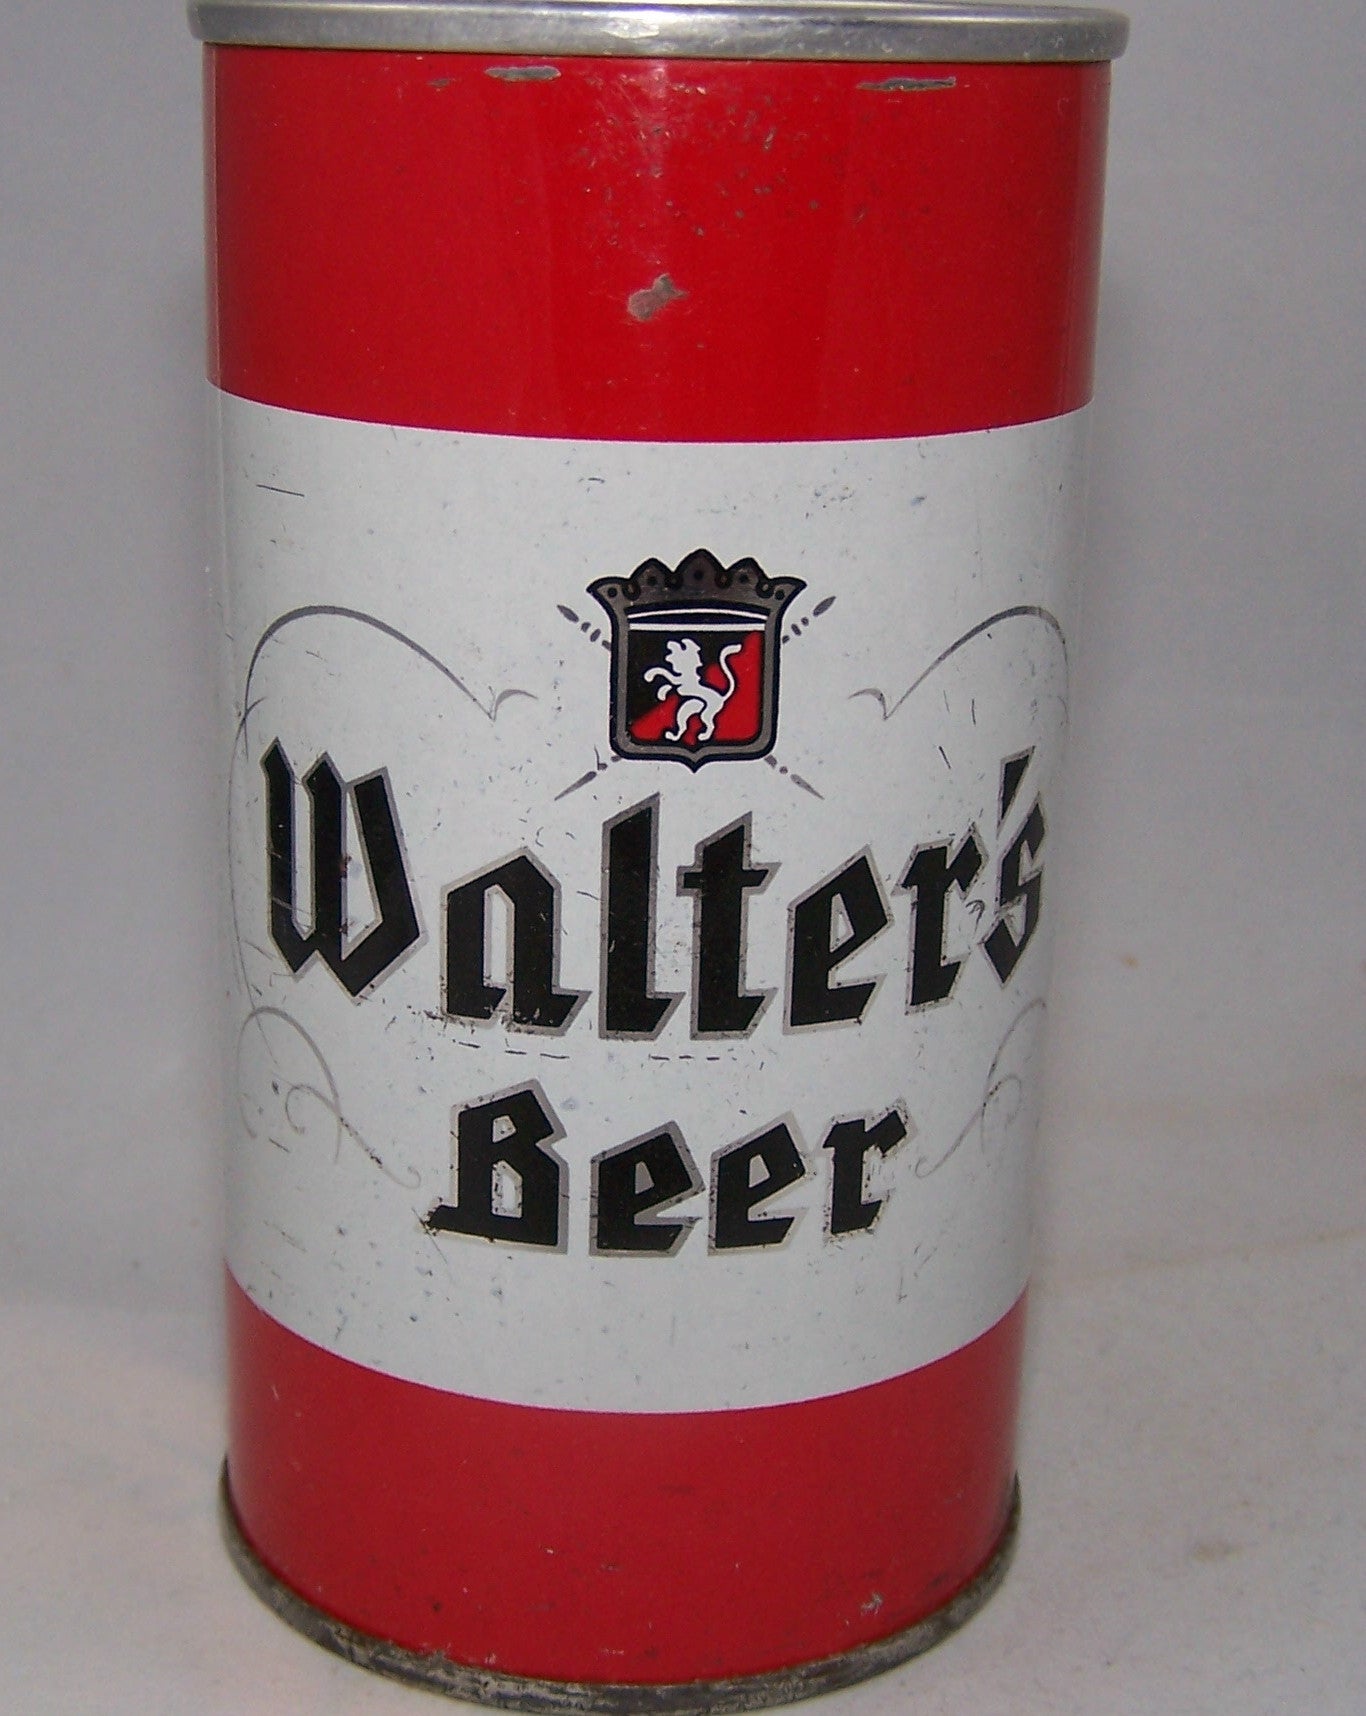 Walter's Beer USBC II 133-33, Grade 1/1- Sold on 08/12/16